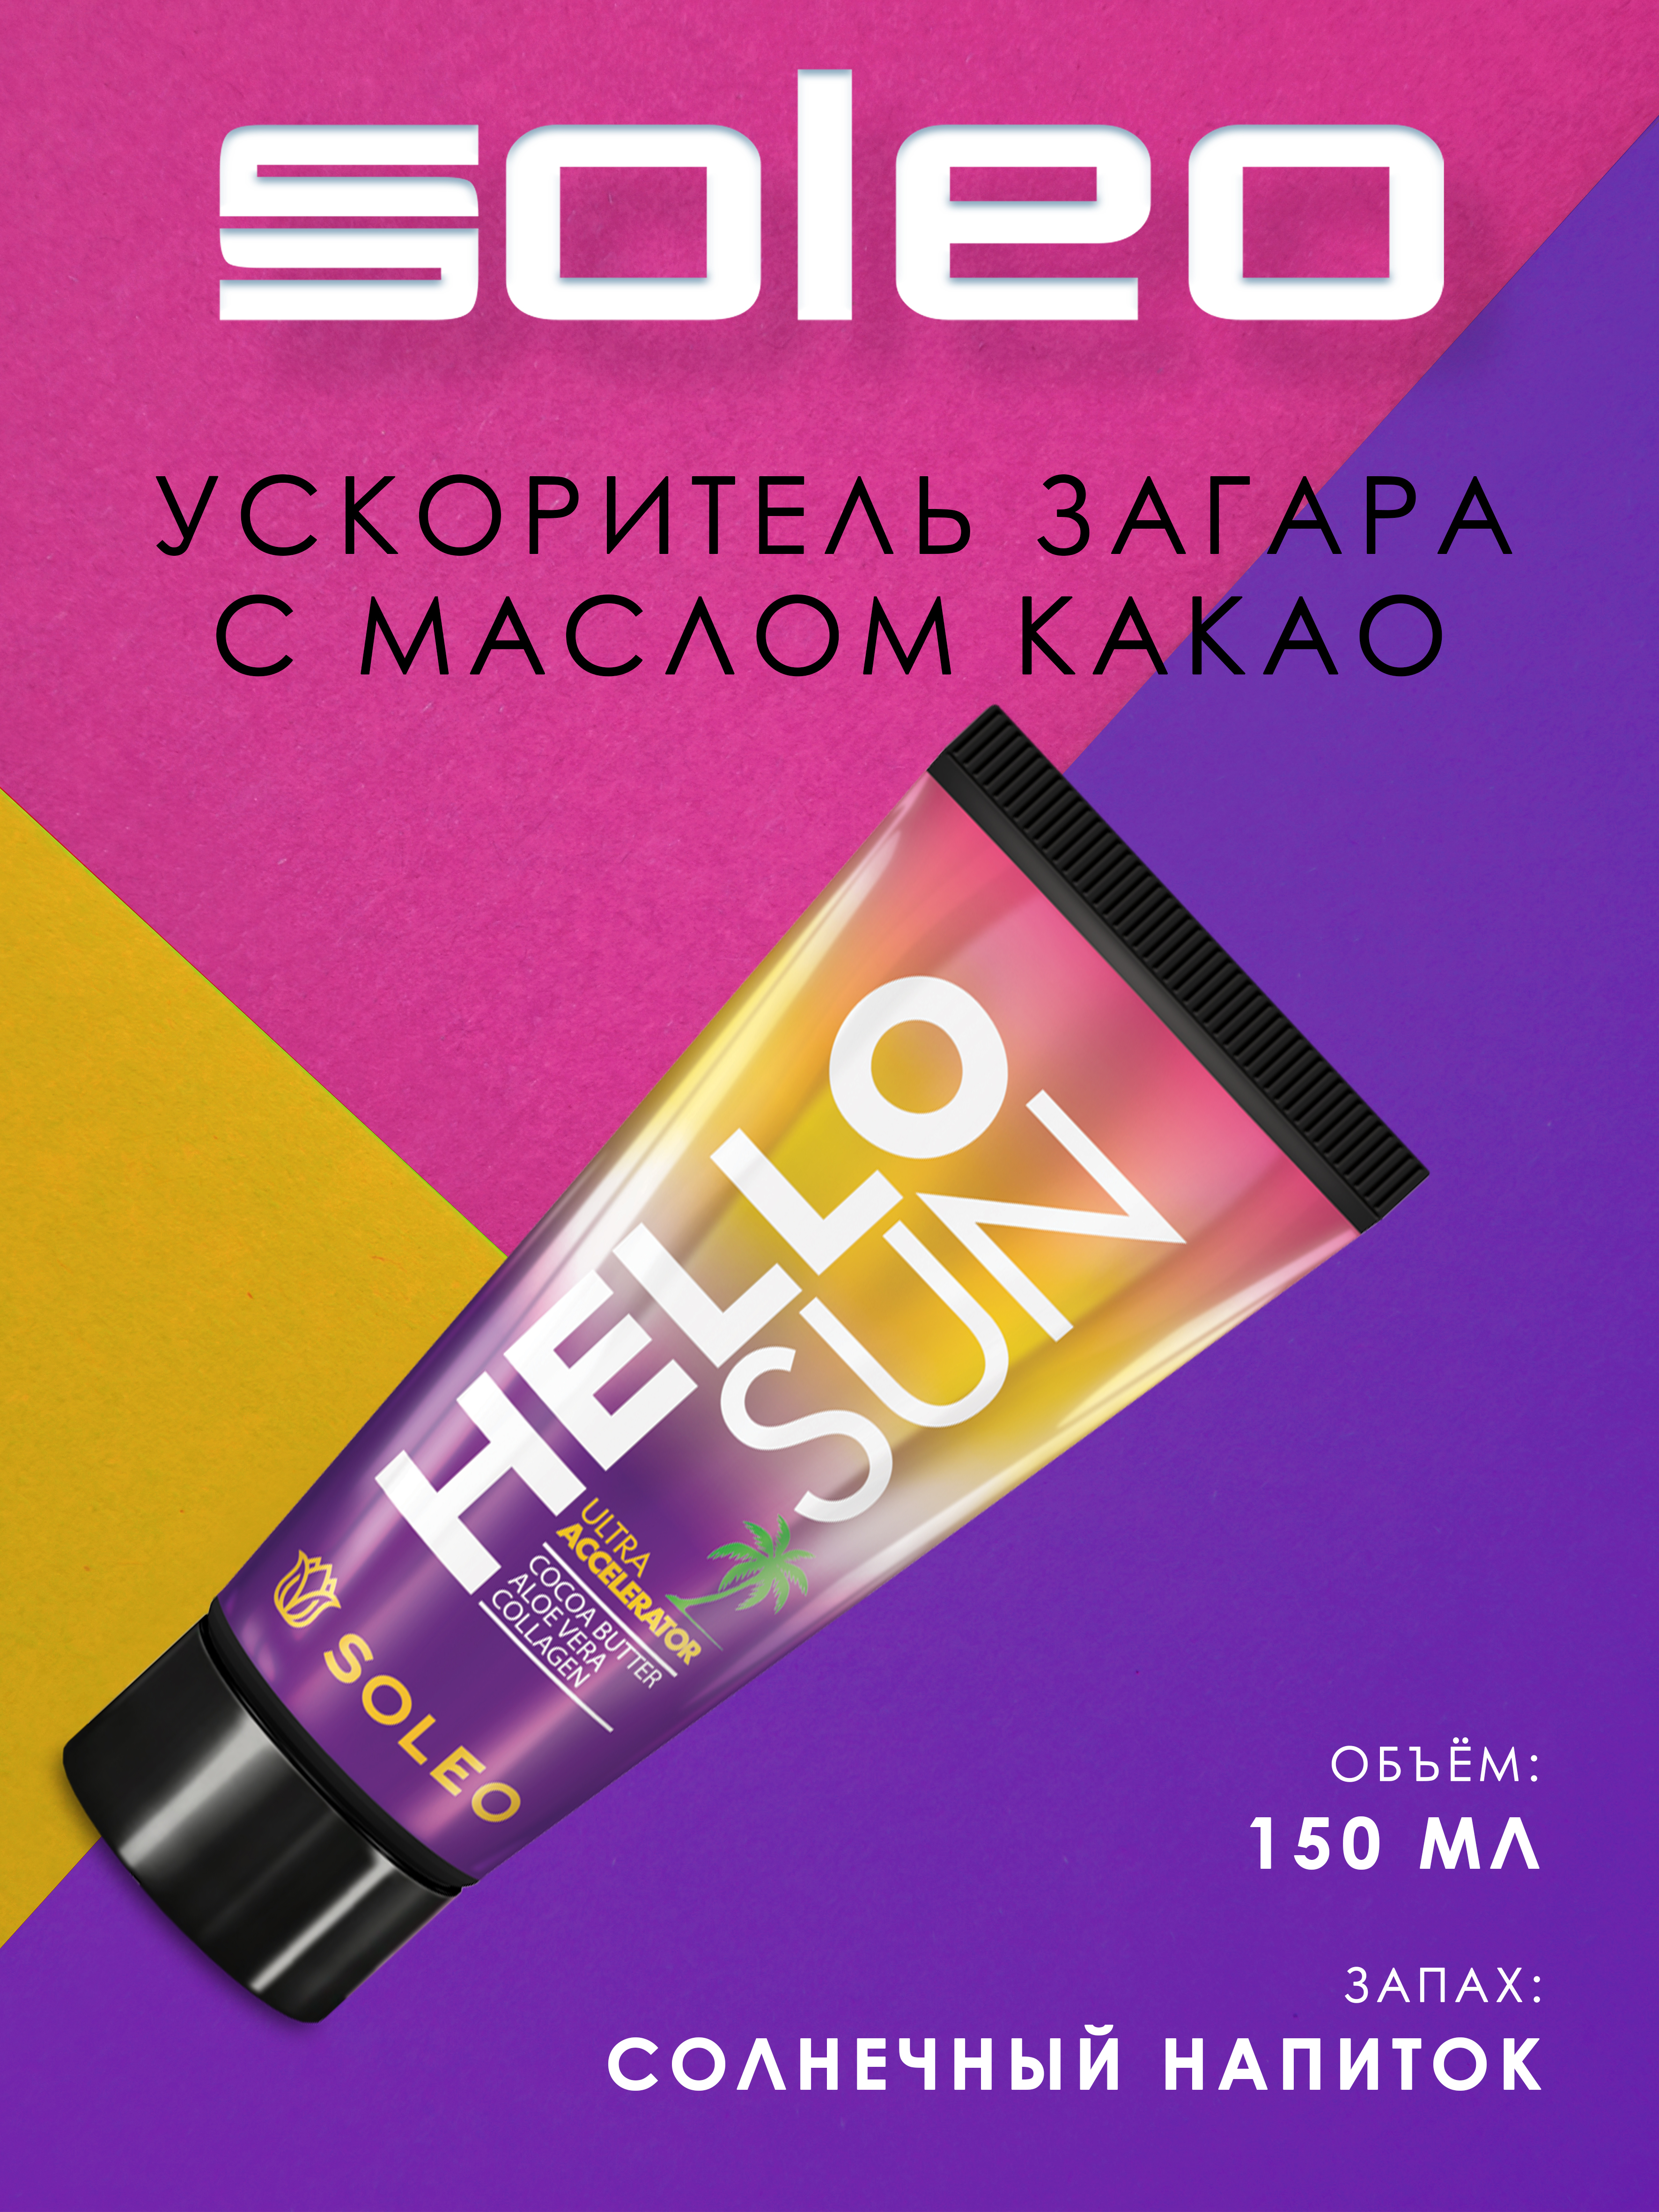 Hello sun. Soleo hello Sun 150. Soleo hello Sun (150 мл) ультра ускоритель с маслом какао. Hello Sun крем для солярия. Крем для загара ускоритель.